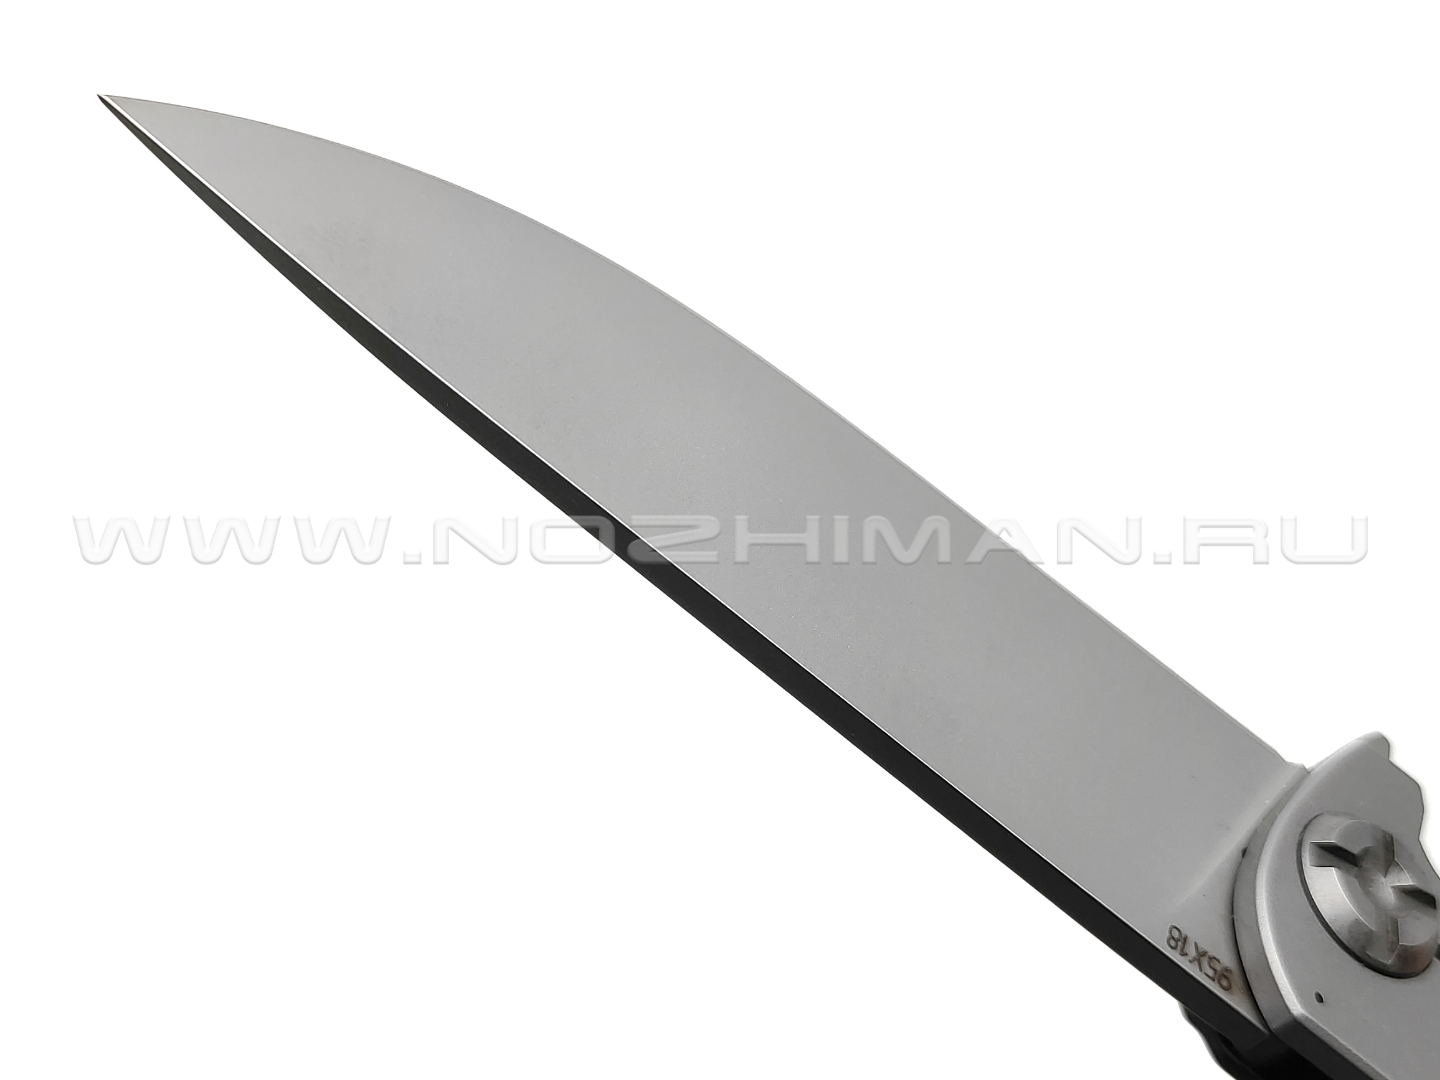 Saro нож Чиж Next, сталь 95Х18, рукоять G10 black